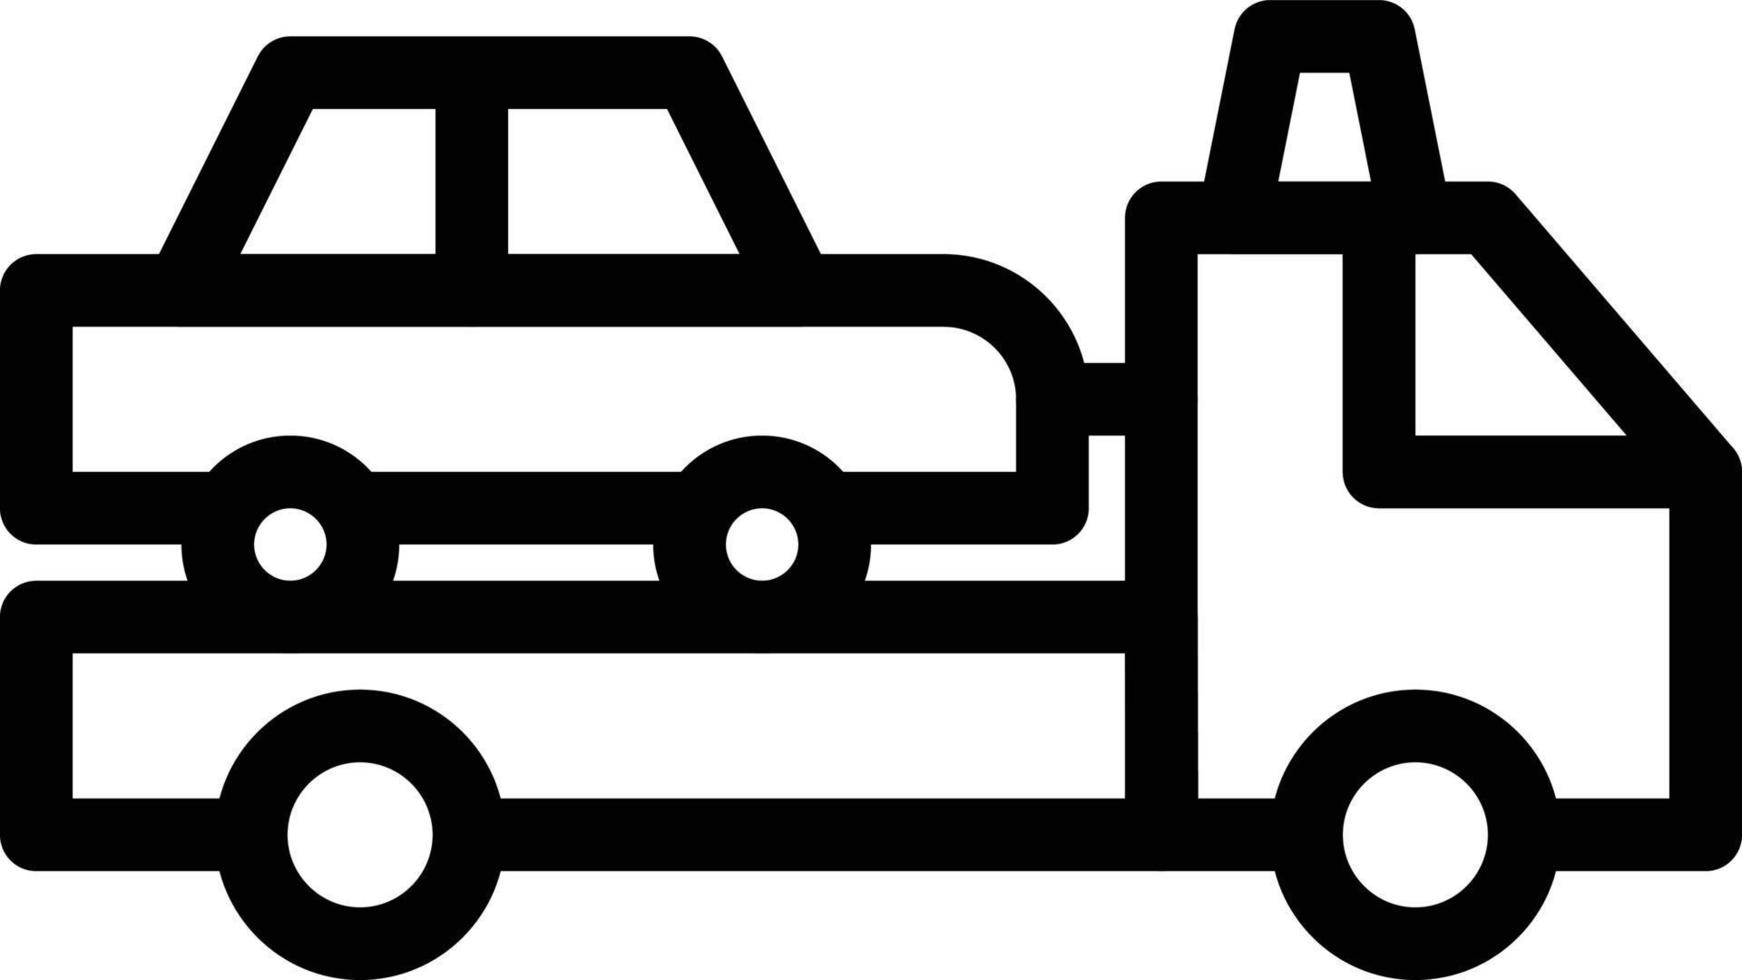 illustration vectorielle de camion sur fond.symboles de qualité premium.icônes vectorielles pour le concept et la conception graphique. vecteur